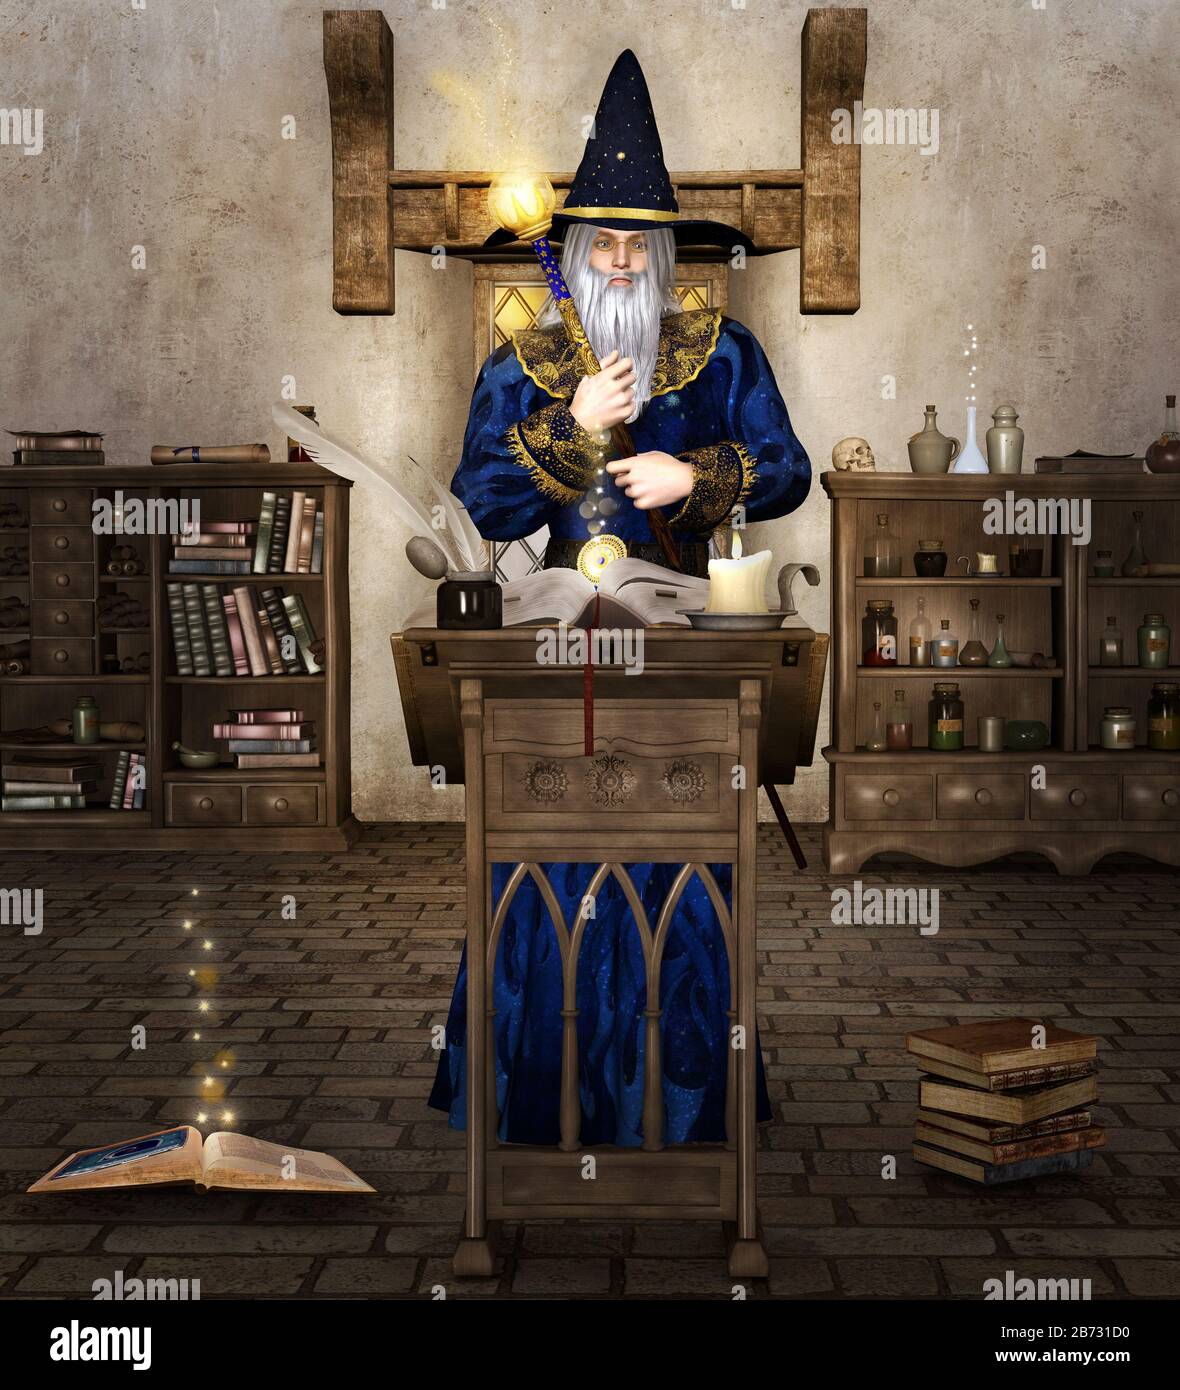 Alter Zauberer bei der Arbeit mit seinem Zauberstab in einer Alchemiekammer Stockfoto